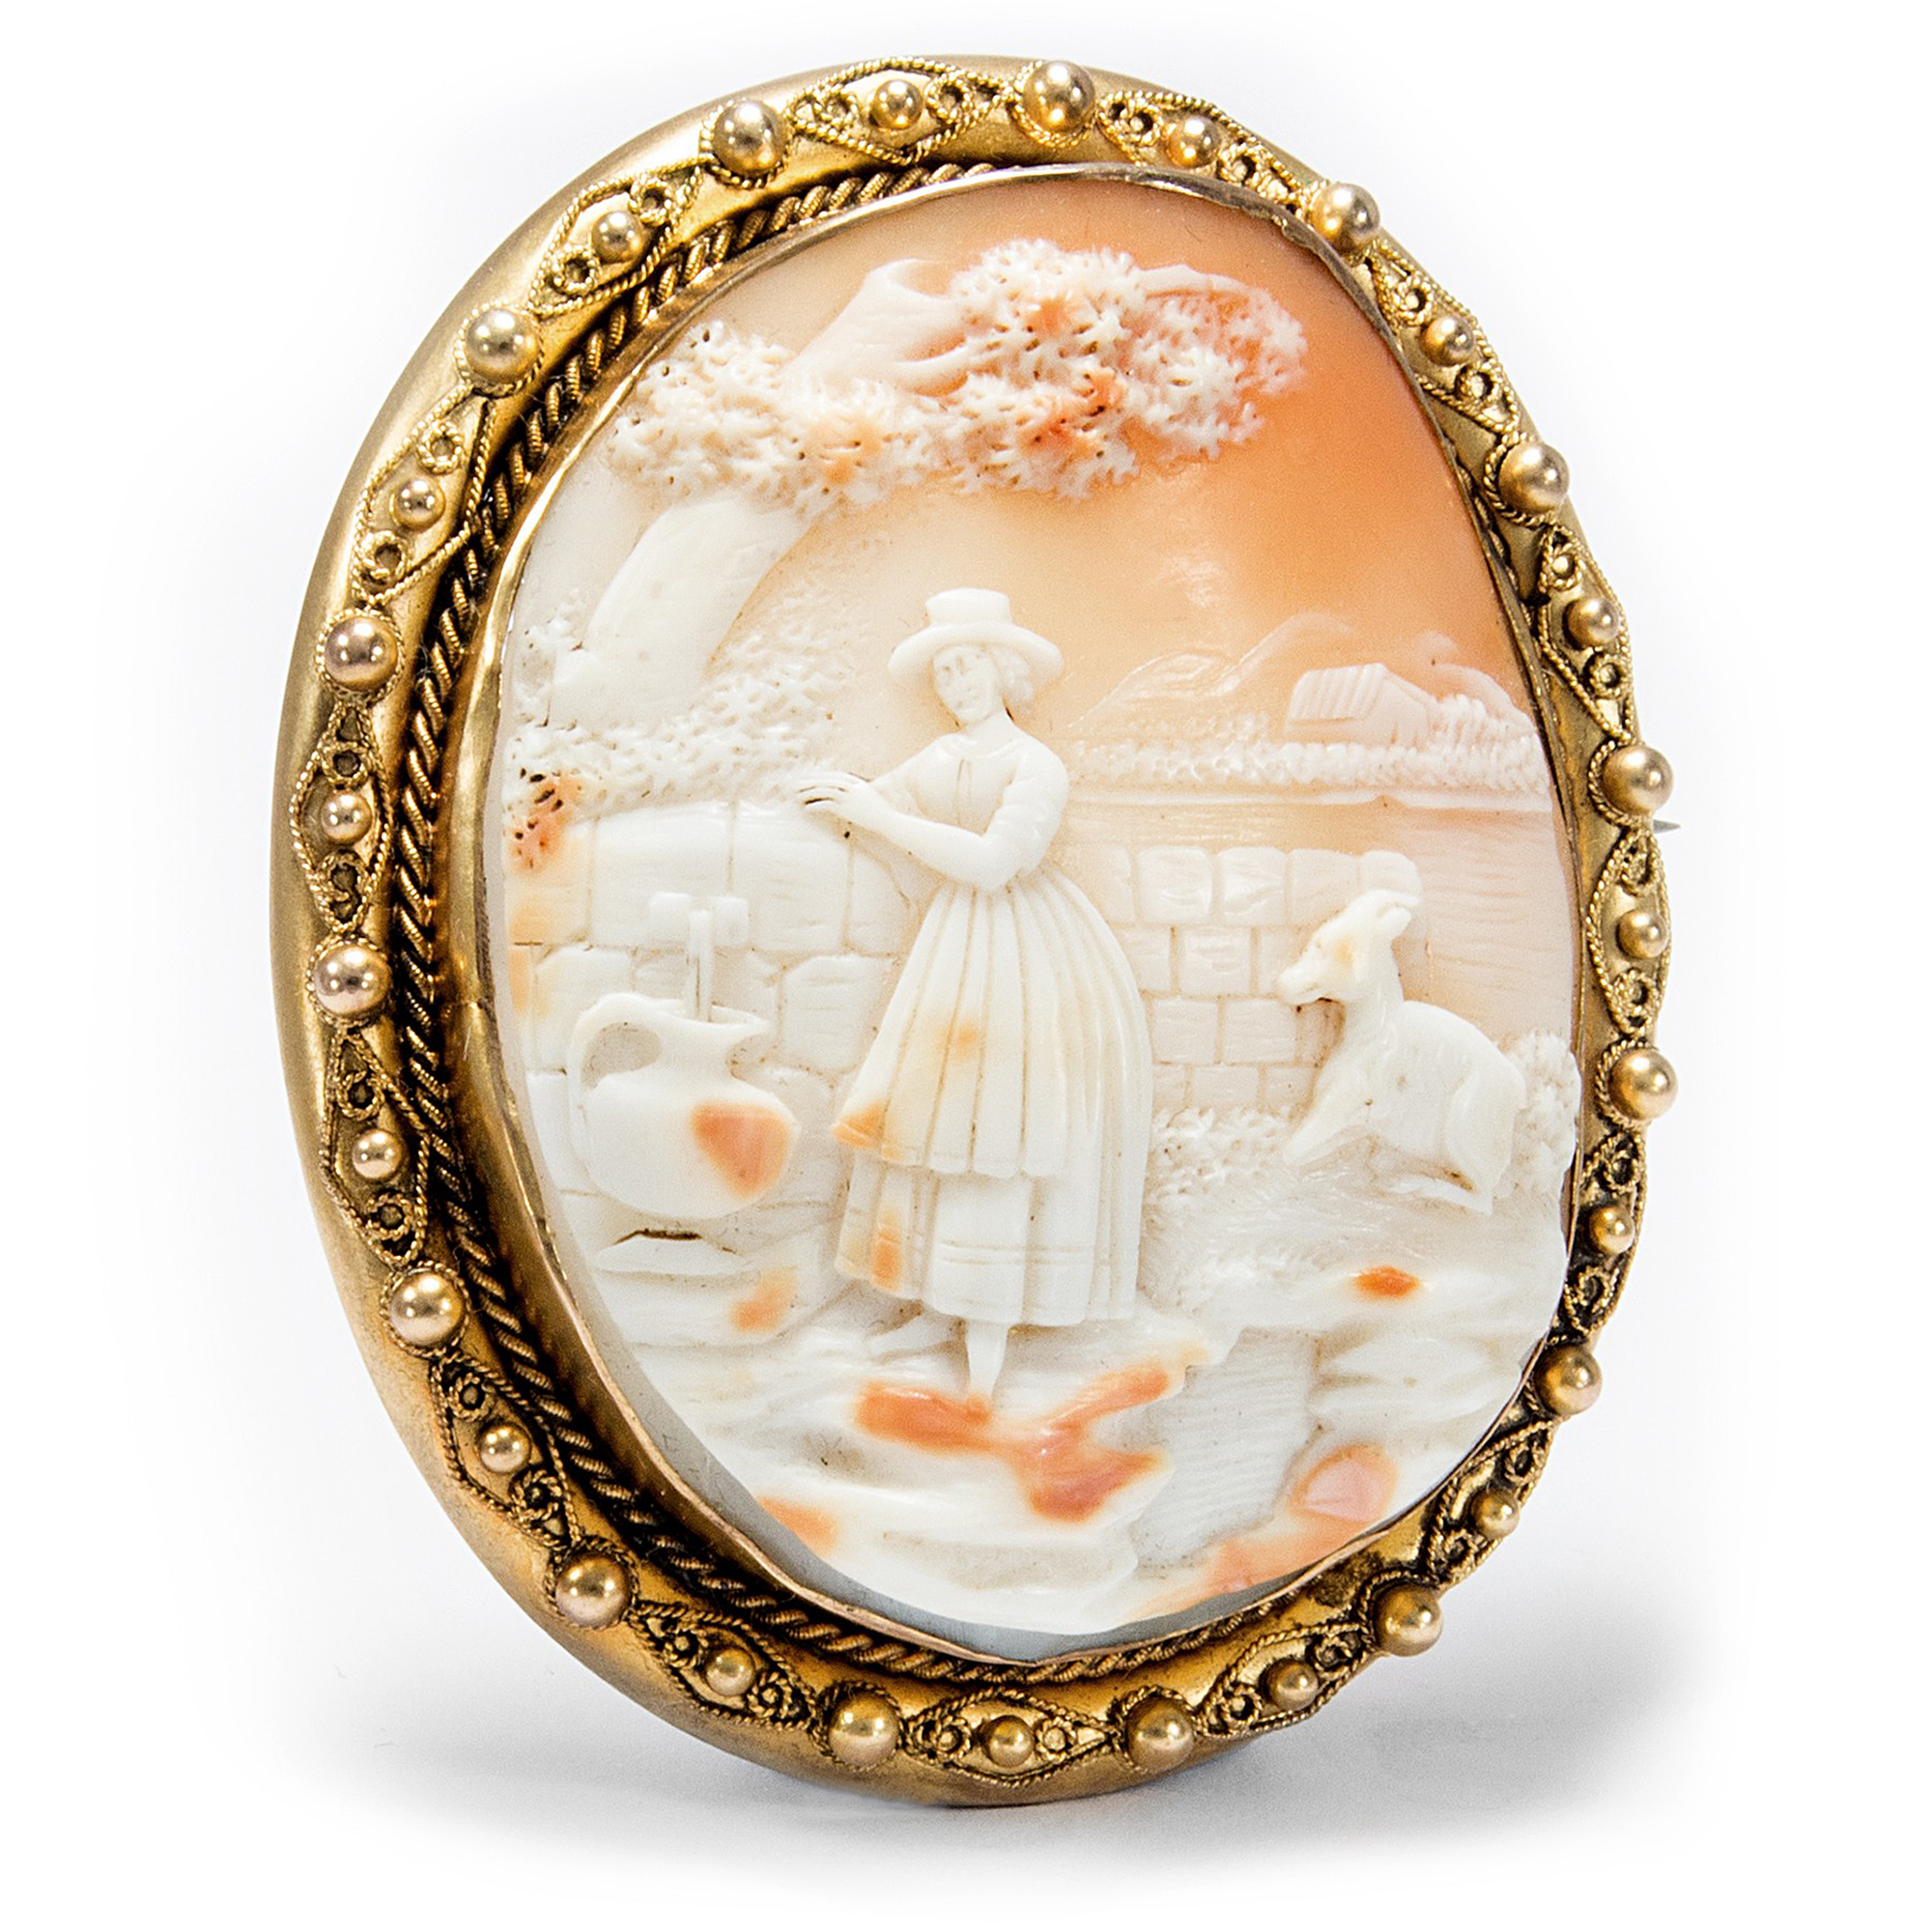 Große Muschelgemme gefasst in Gold als Brosche & Anhänger, Frankreich um 1850